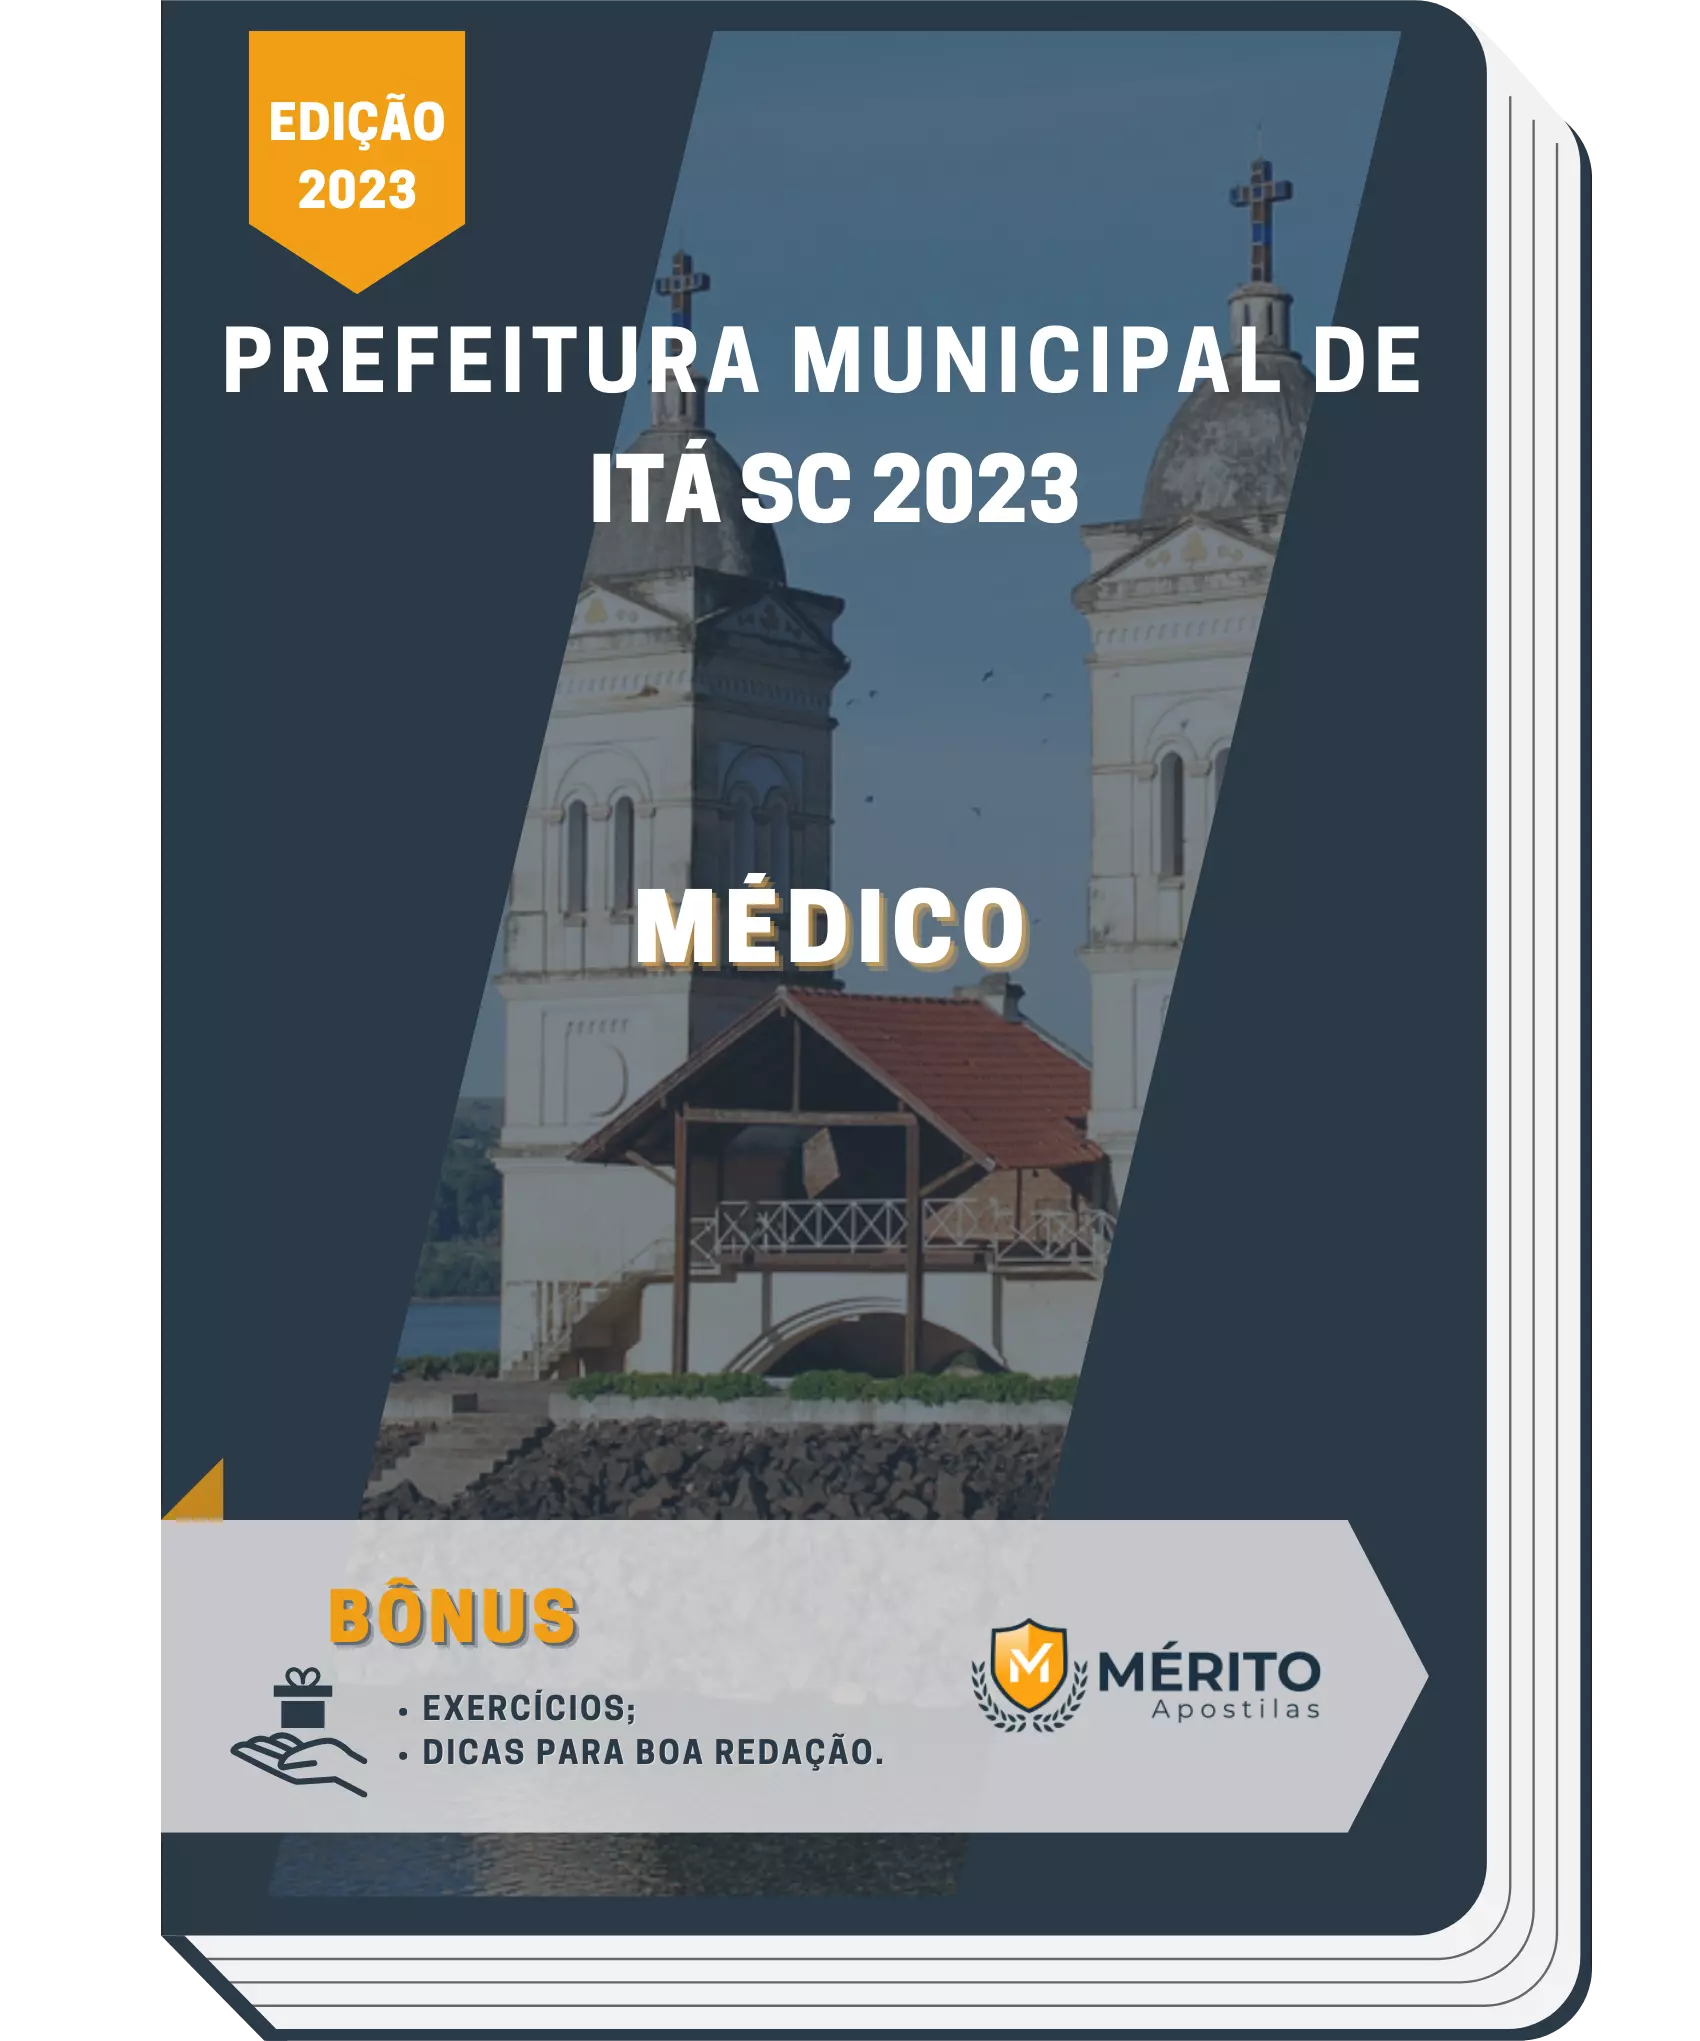 https://meritoapostilas.com.br/wp-content/uploads/2023/04/Medico-6.webp